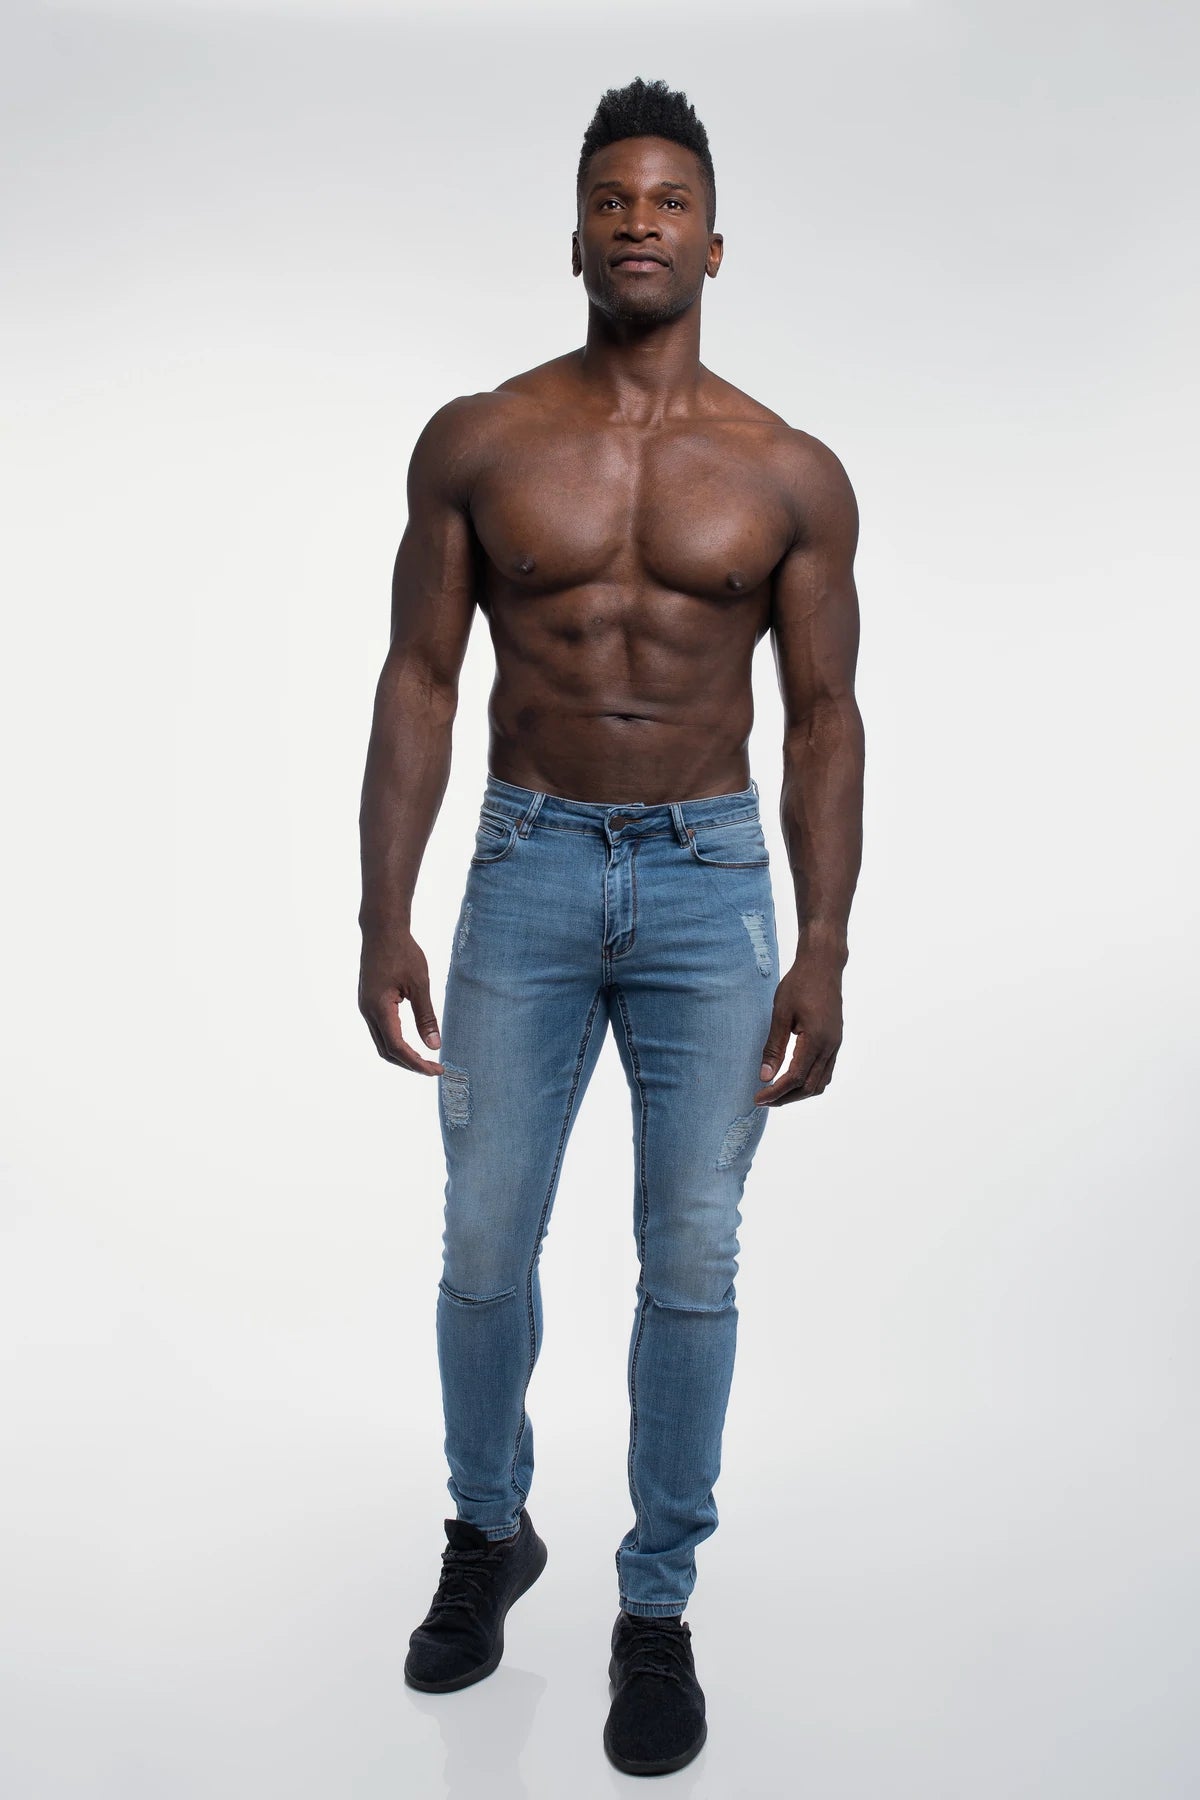 In Defense of Men Wearing Skinny Jeans